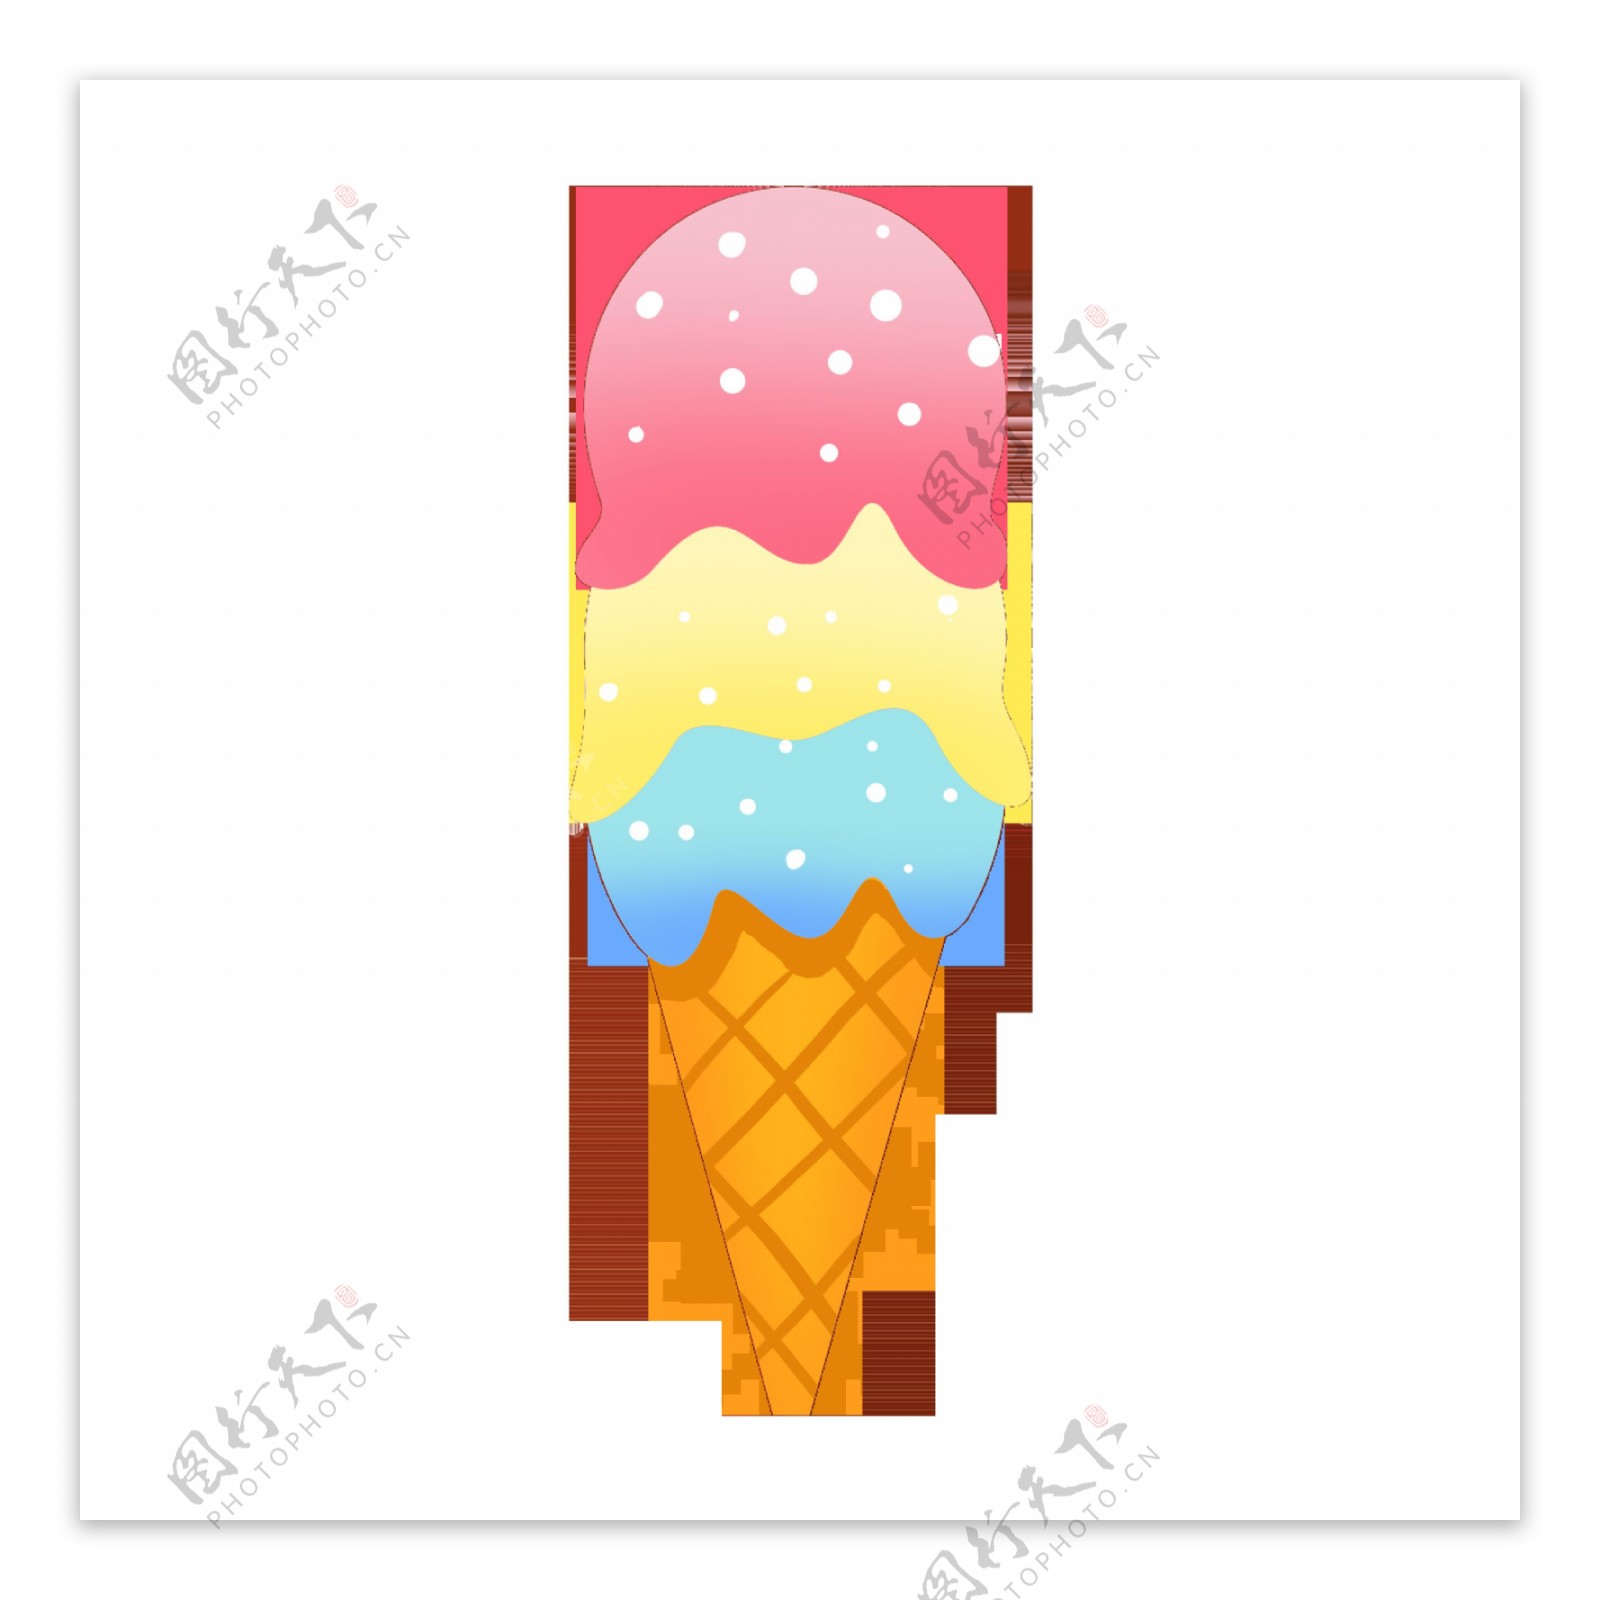 夏日清凉手绘甜品蛋糕冰淇淋雪糕插画